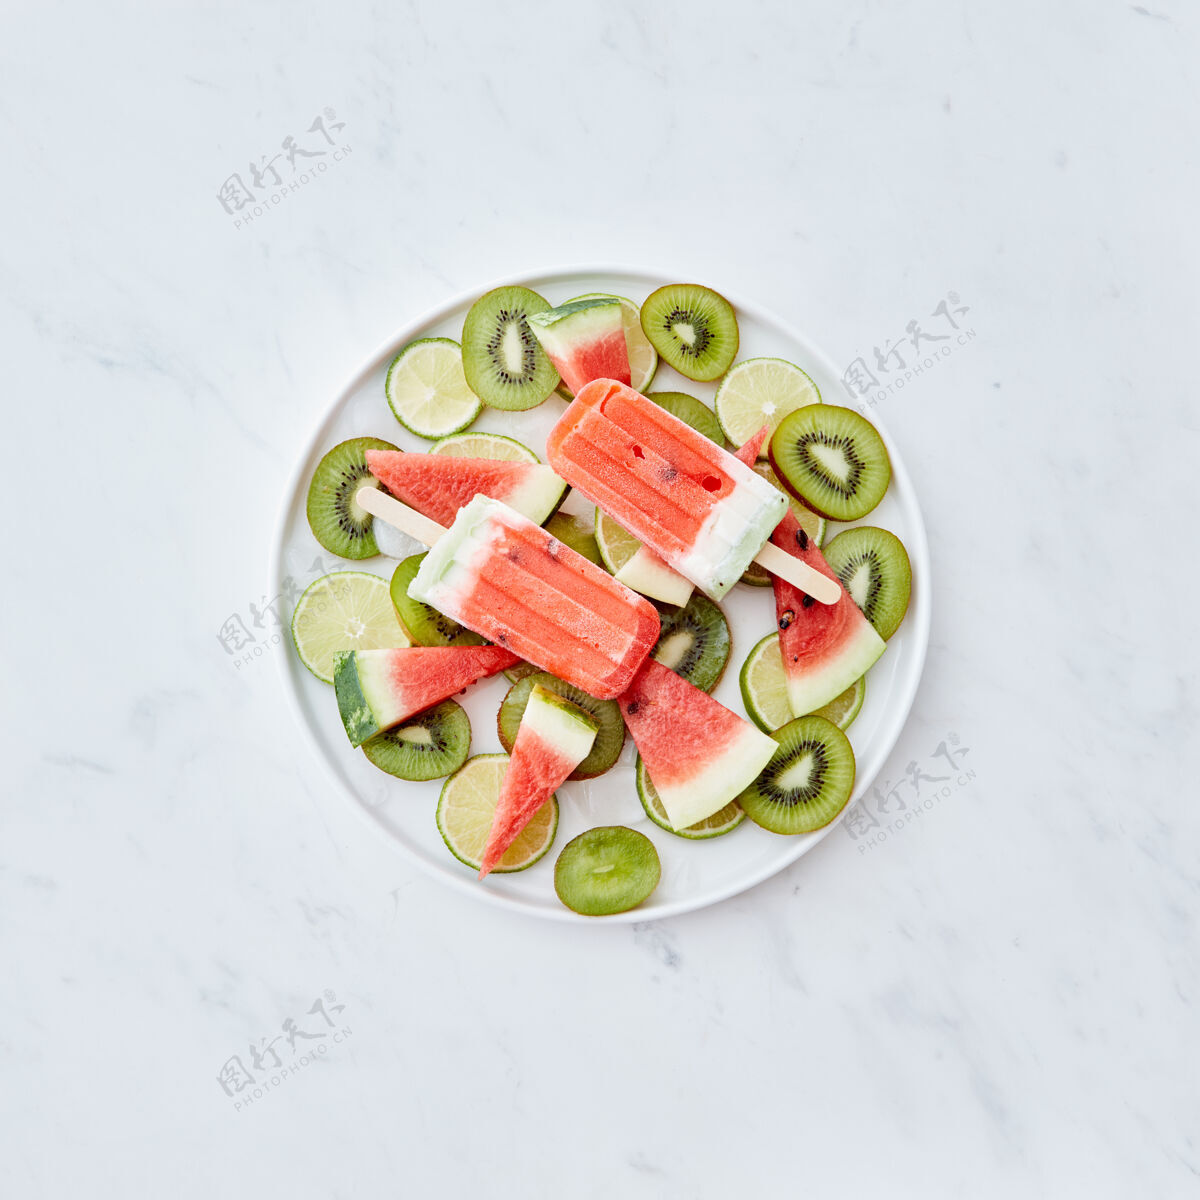 营养水果冷冻冰沙以西瓜片的形式放在盘子里 上面放着冰块 水果片放在灰色的墙上 上面留有文字冰淇淋棒棒糖躺下风味西瓜冰